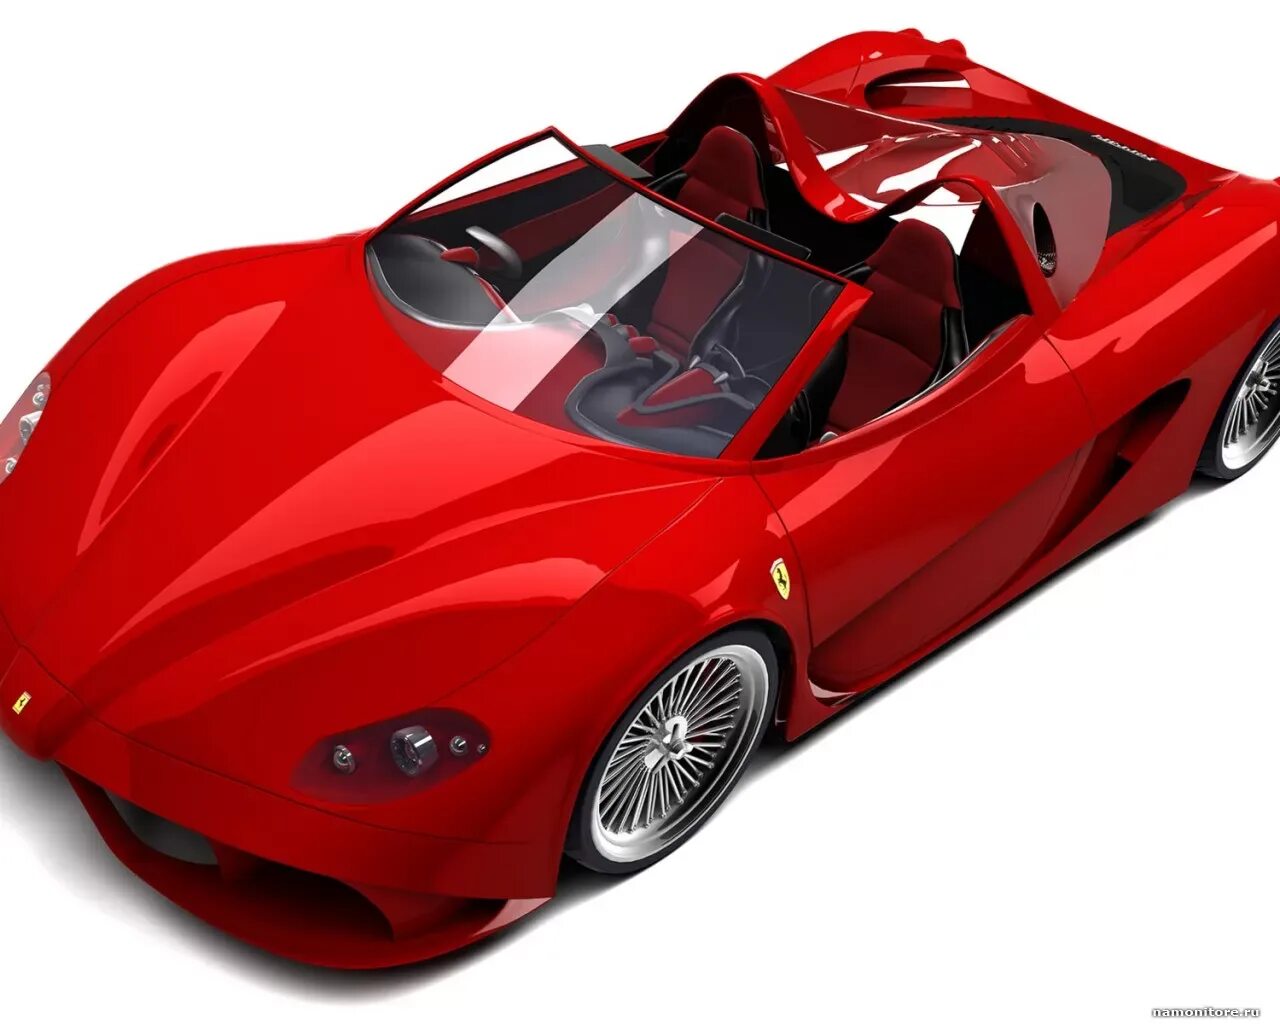 Бело красный автомобиль. Ferrari Enzo кабриолет. Ferrari Aurea. Автомобиль красный. Машины (красная).